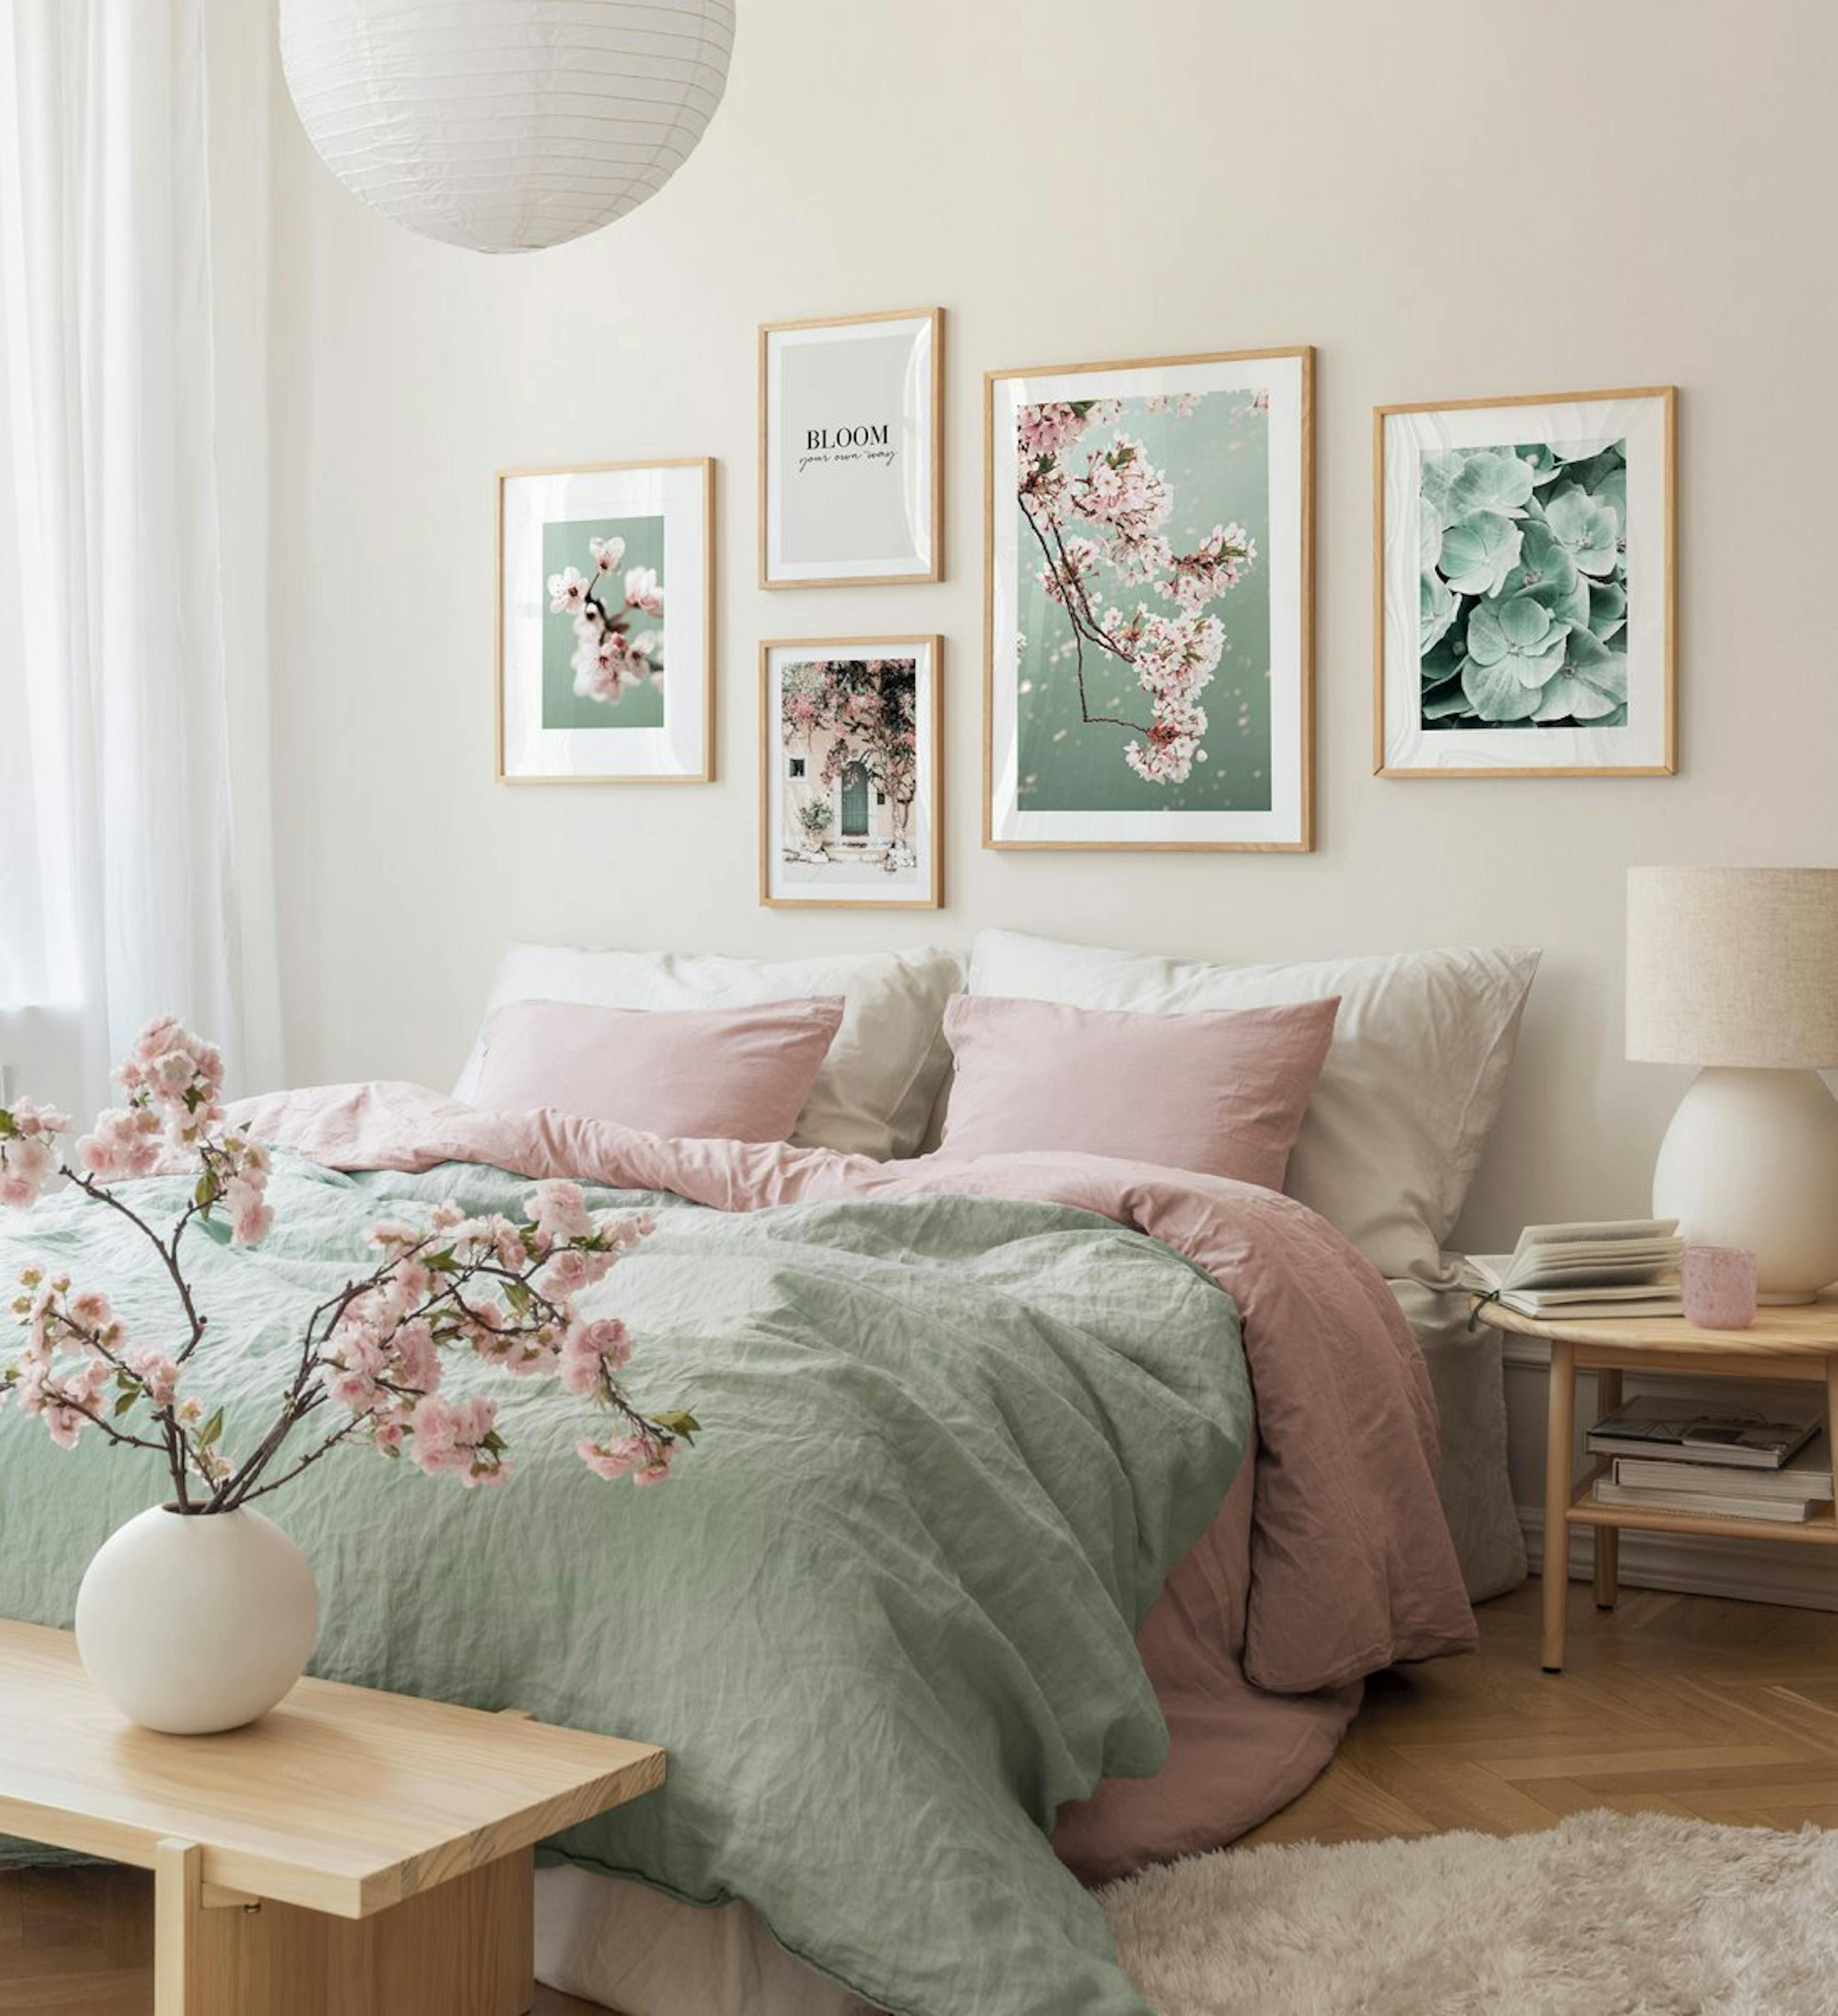 오크 프레임과 초록색의 네츄럴 아트가 어우러져 차분한 분위기의 침실용 갤러리월